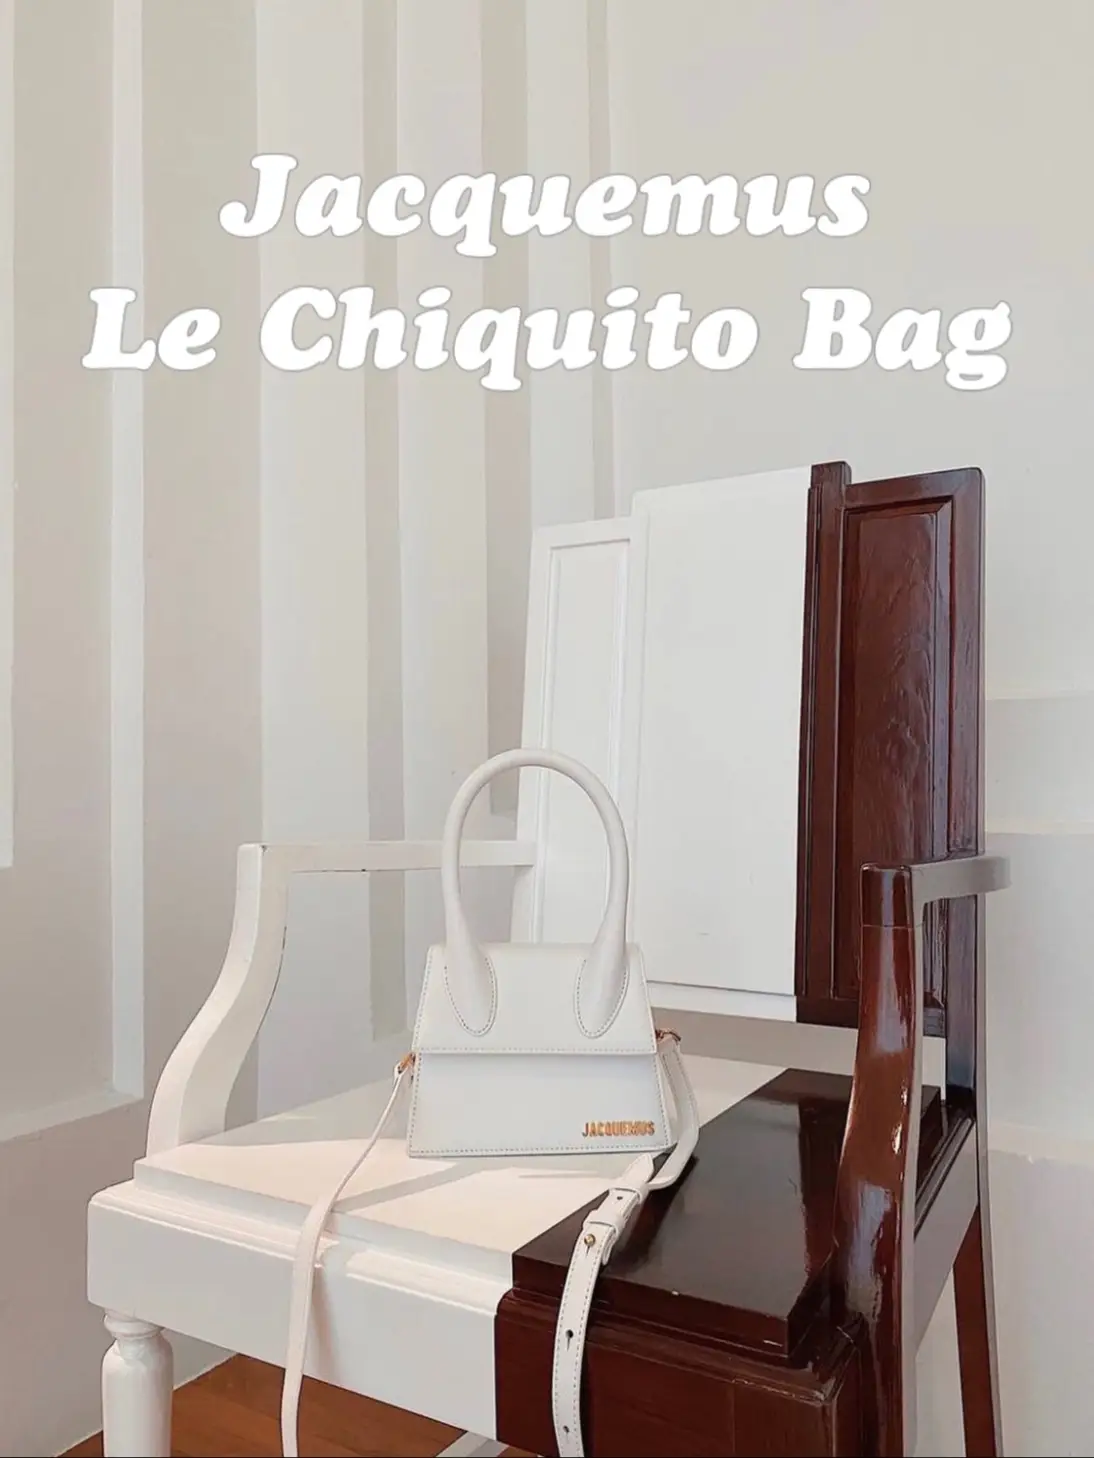 JACQUEMUS LE CHIQUITO LONG UNBOXING & REVIEW 